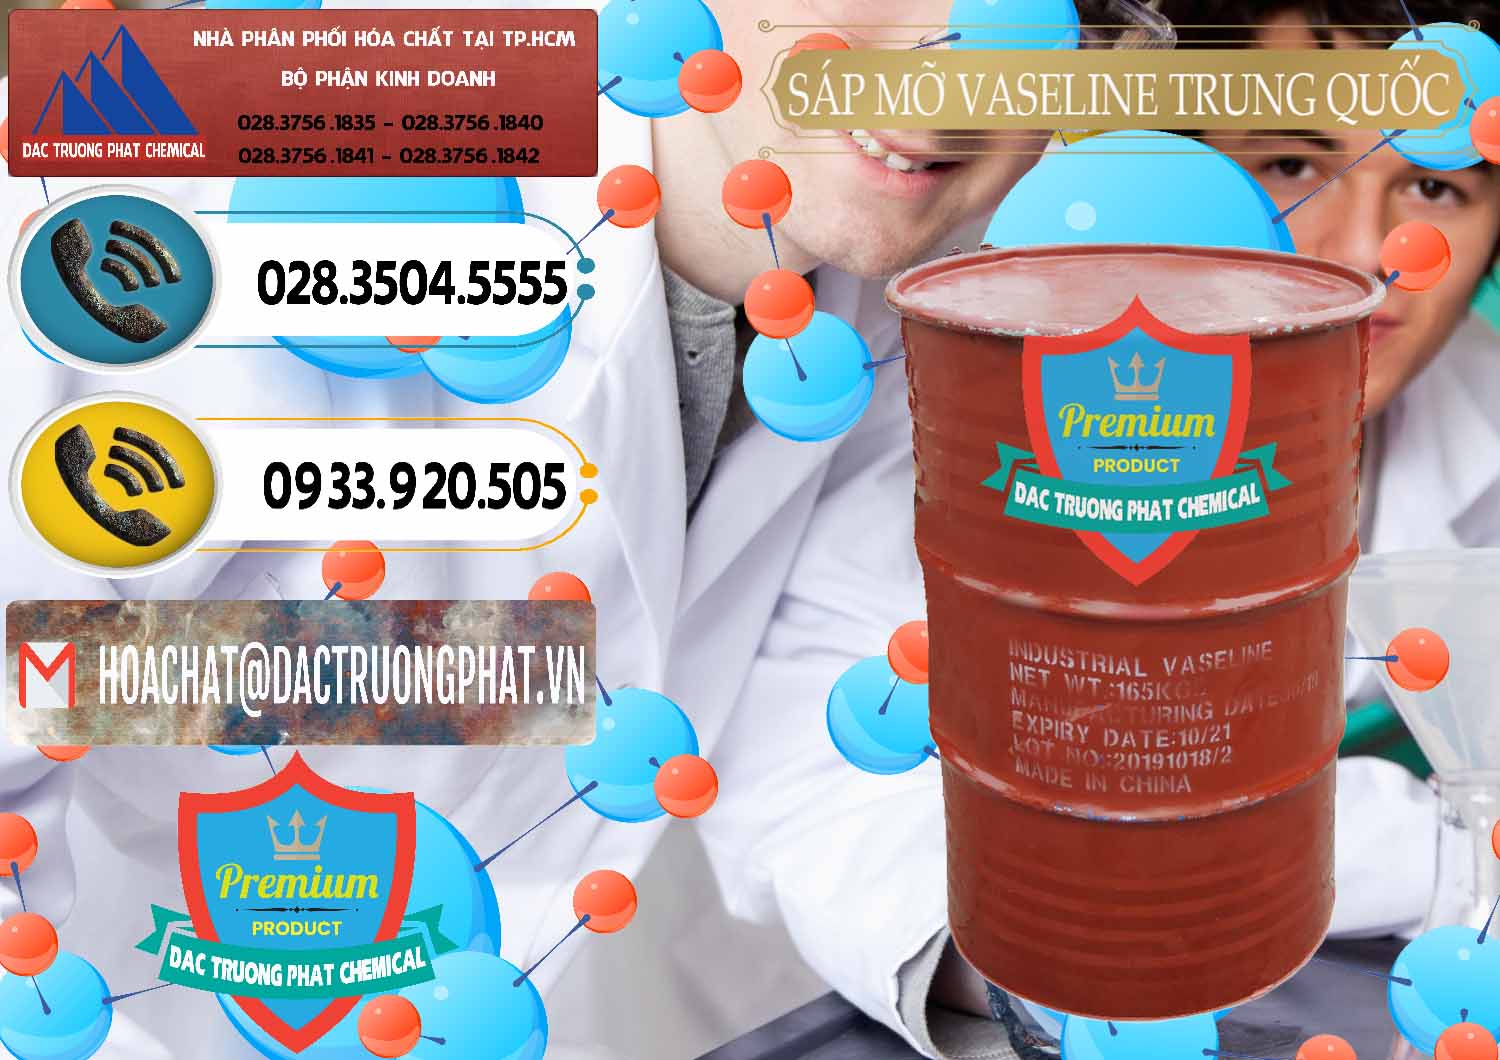 Chuyên cung cấp ( bán ) Sáp Mỡ Vaseline Trung Quốc China - 0122 - Công ty chuyên cung cấp ( bán ) hóa chất tại TP.HCM - hoachatdetnhuom.vn